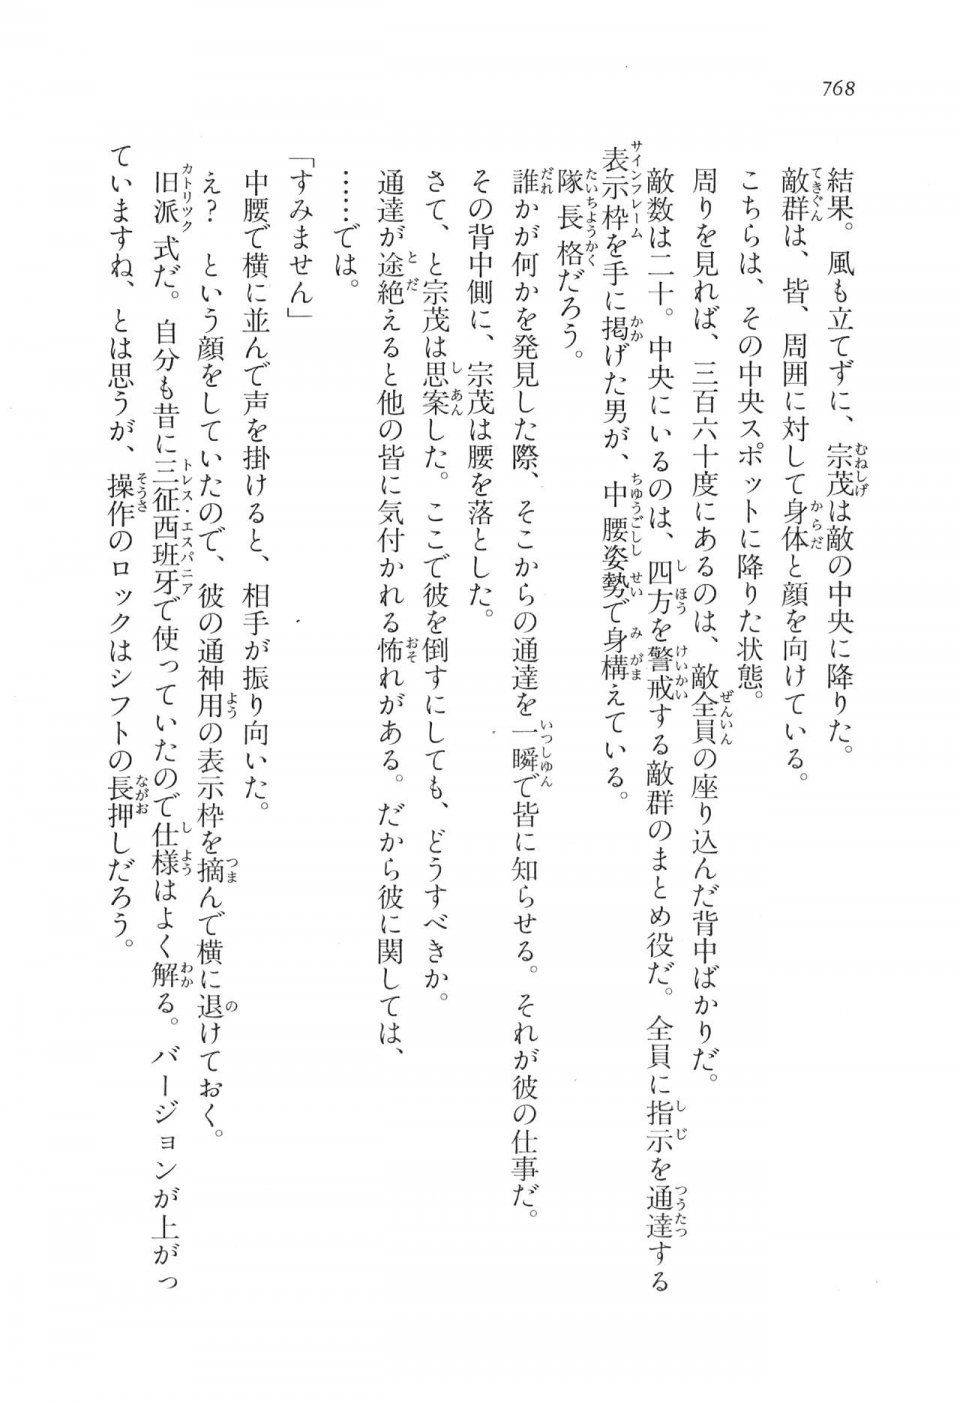 Kyoukai Senjou no Horizon LN Vol 17(7B) - Photo #770